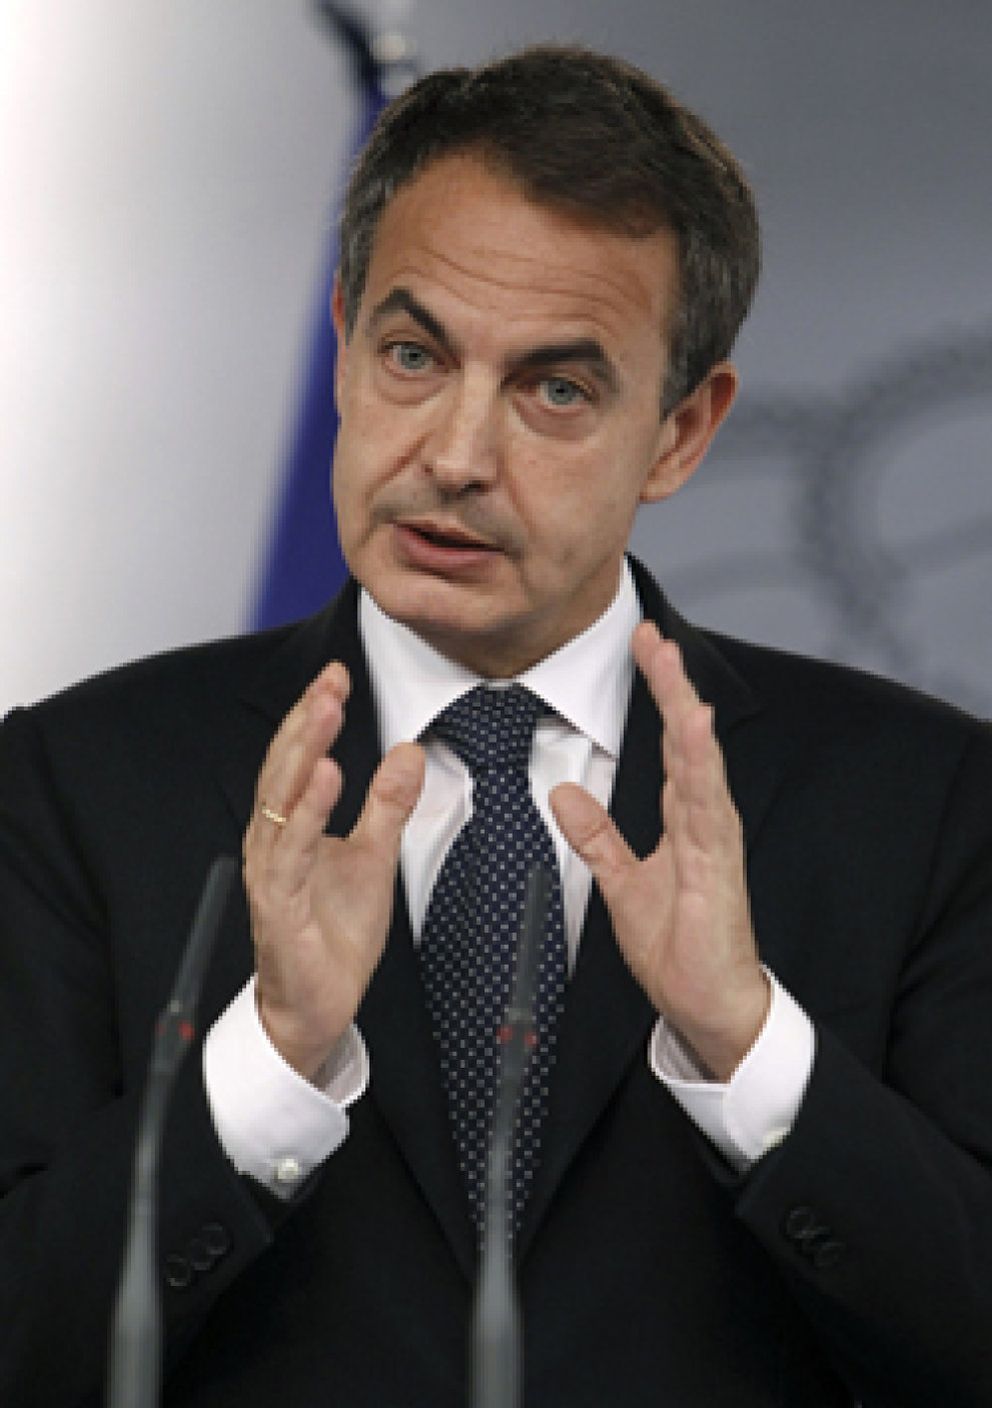 Foto: Embajada de EEUU en España: "Zapatero no habla inglés, aunque podría entenderlo"